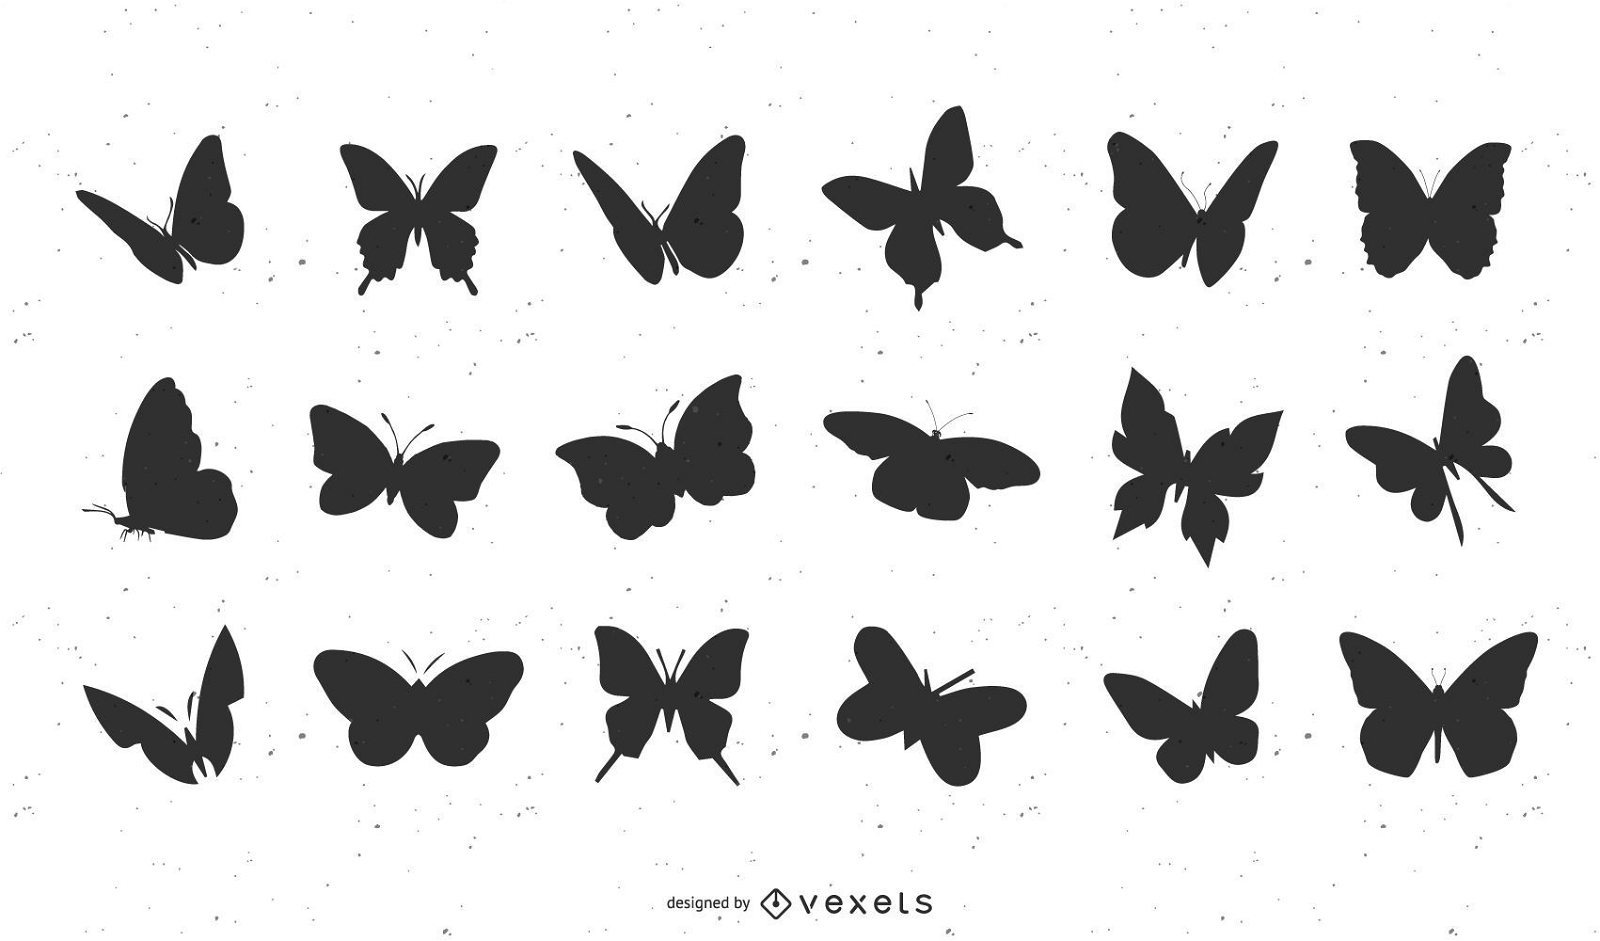 Siluetas de mariposas